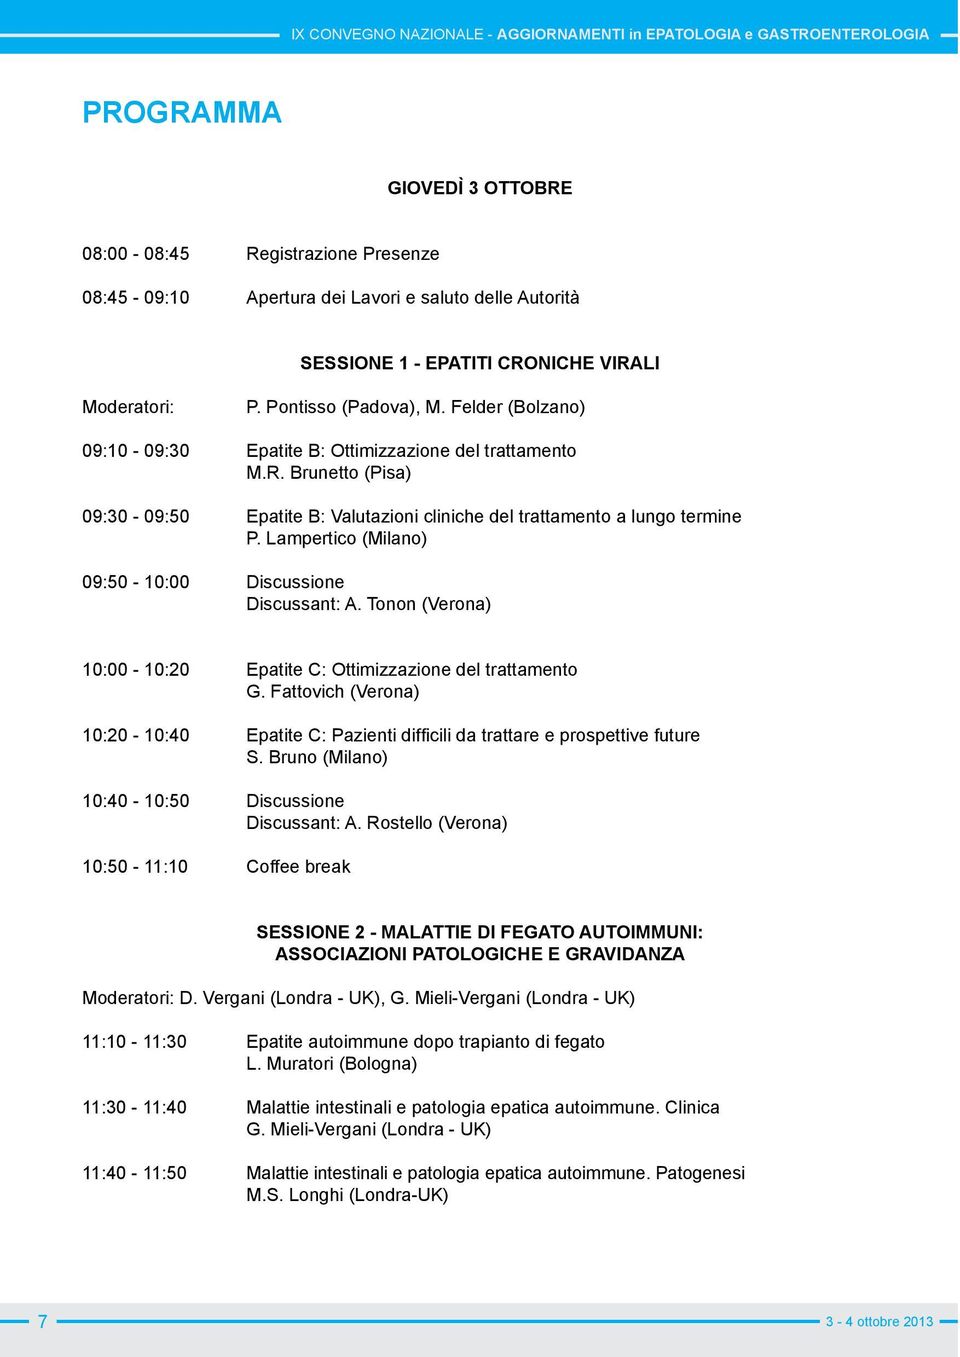 Lampertico (Milano) 09:50-10:00 Discussione Discussant: A. Tonon (Verona) 10:00-10:20 Epatite C: Ottimizzazione del trattamento G. Fattovich (Verona) S.